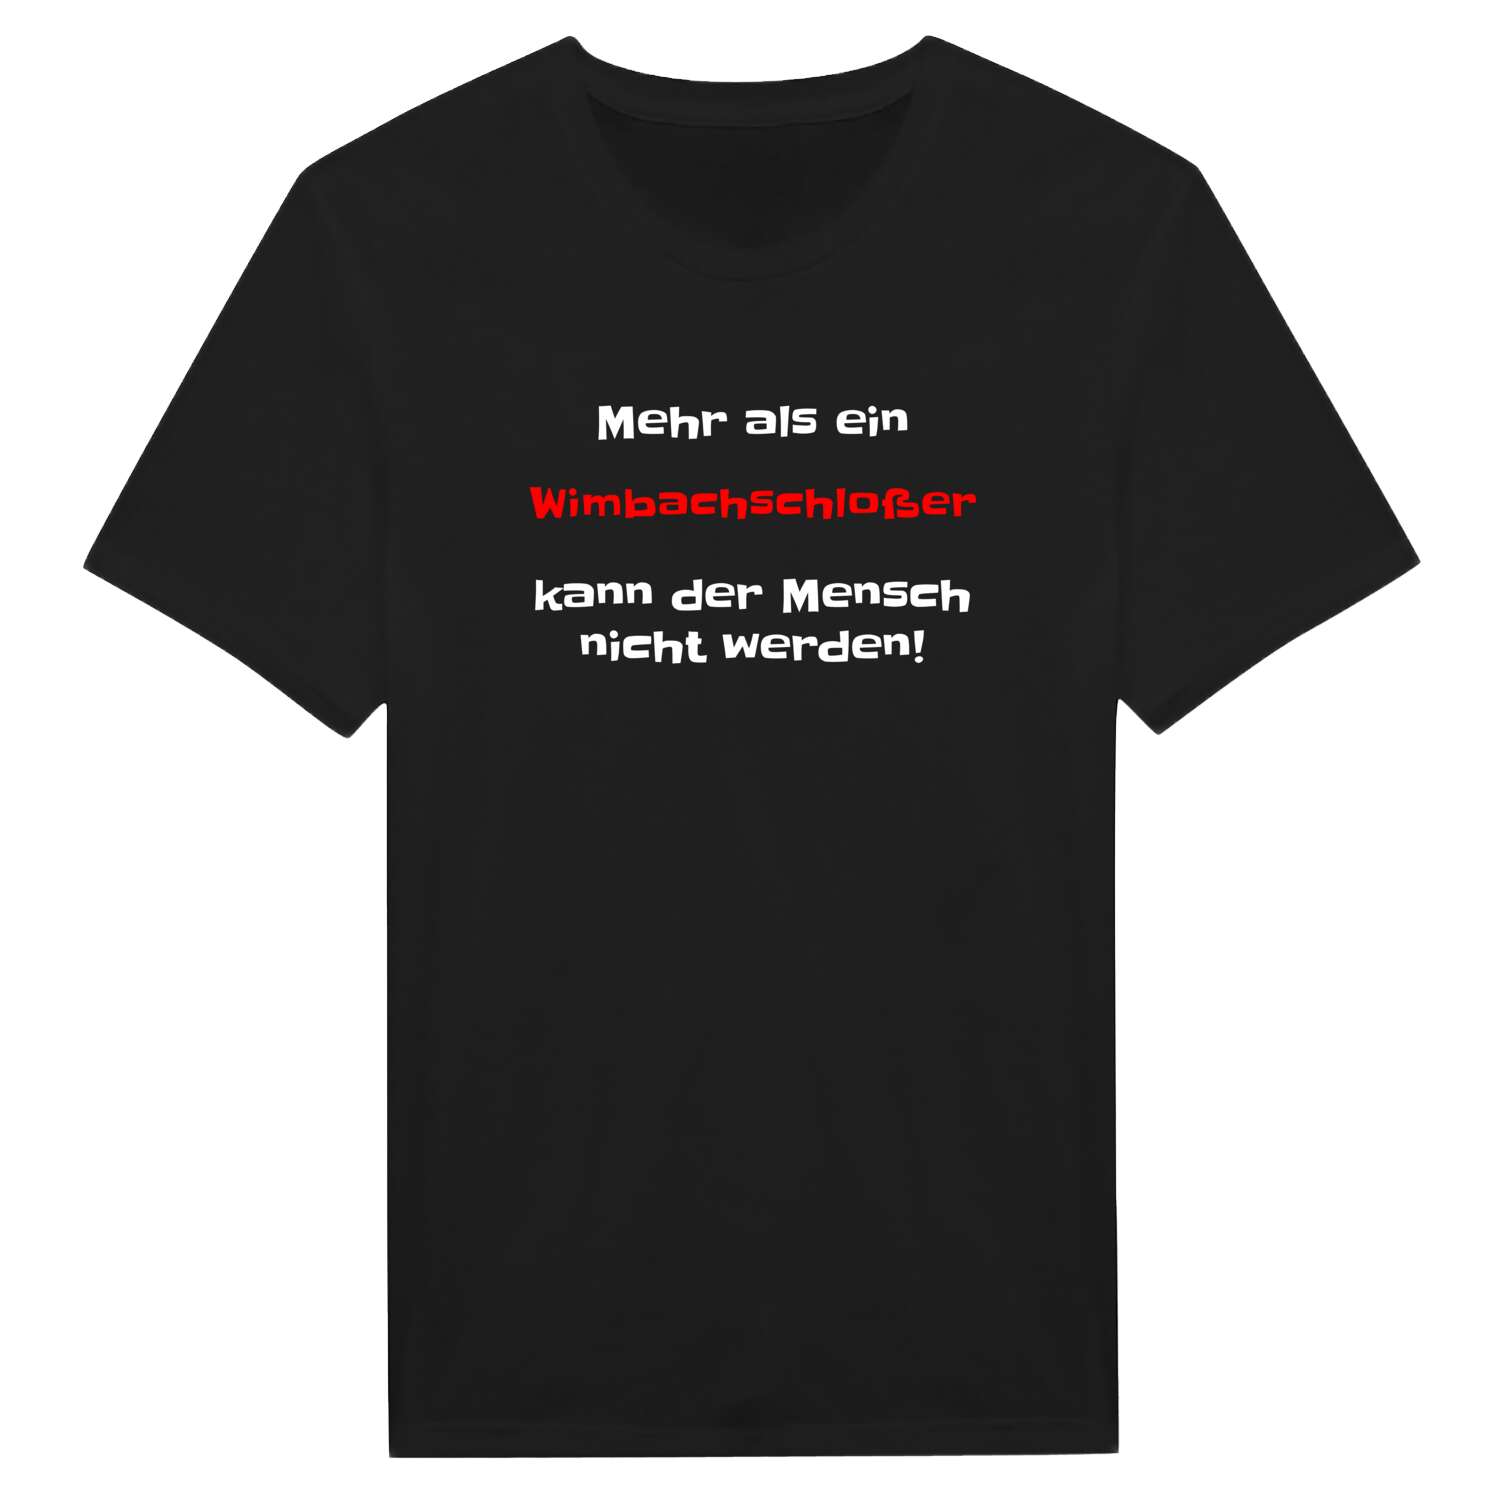 Wimbachschloß T-Shirt »Mehr als ein«